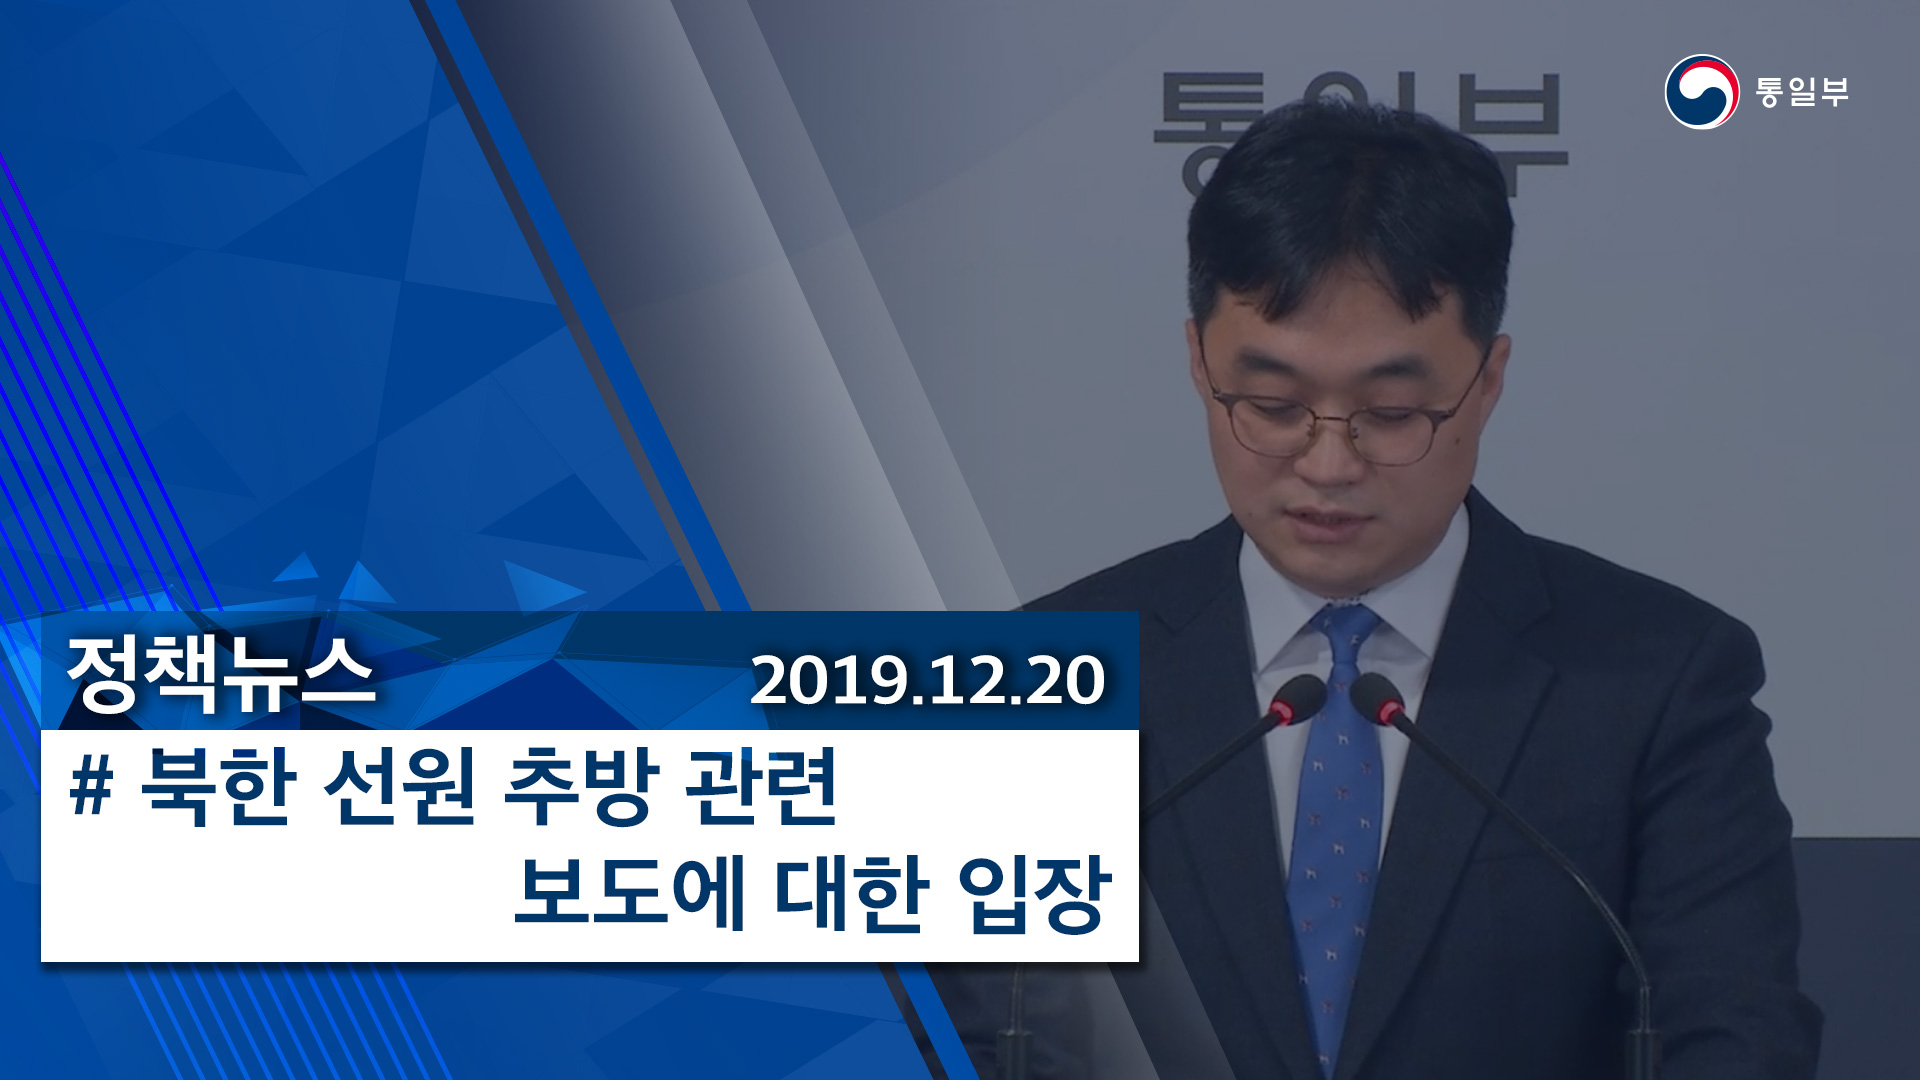 [정책뉴스] 북한 선원 추방 관련 보도에 대한 입장 (2019.12.20)